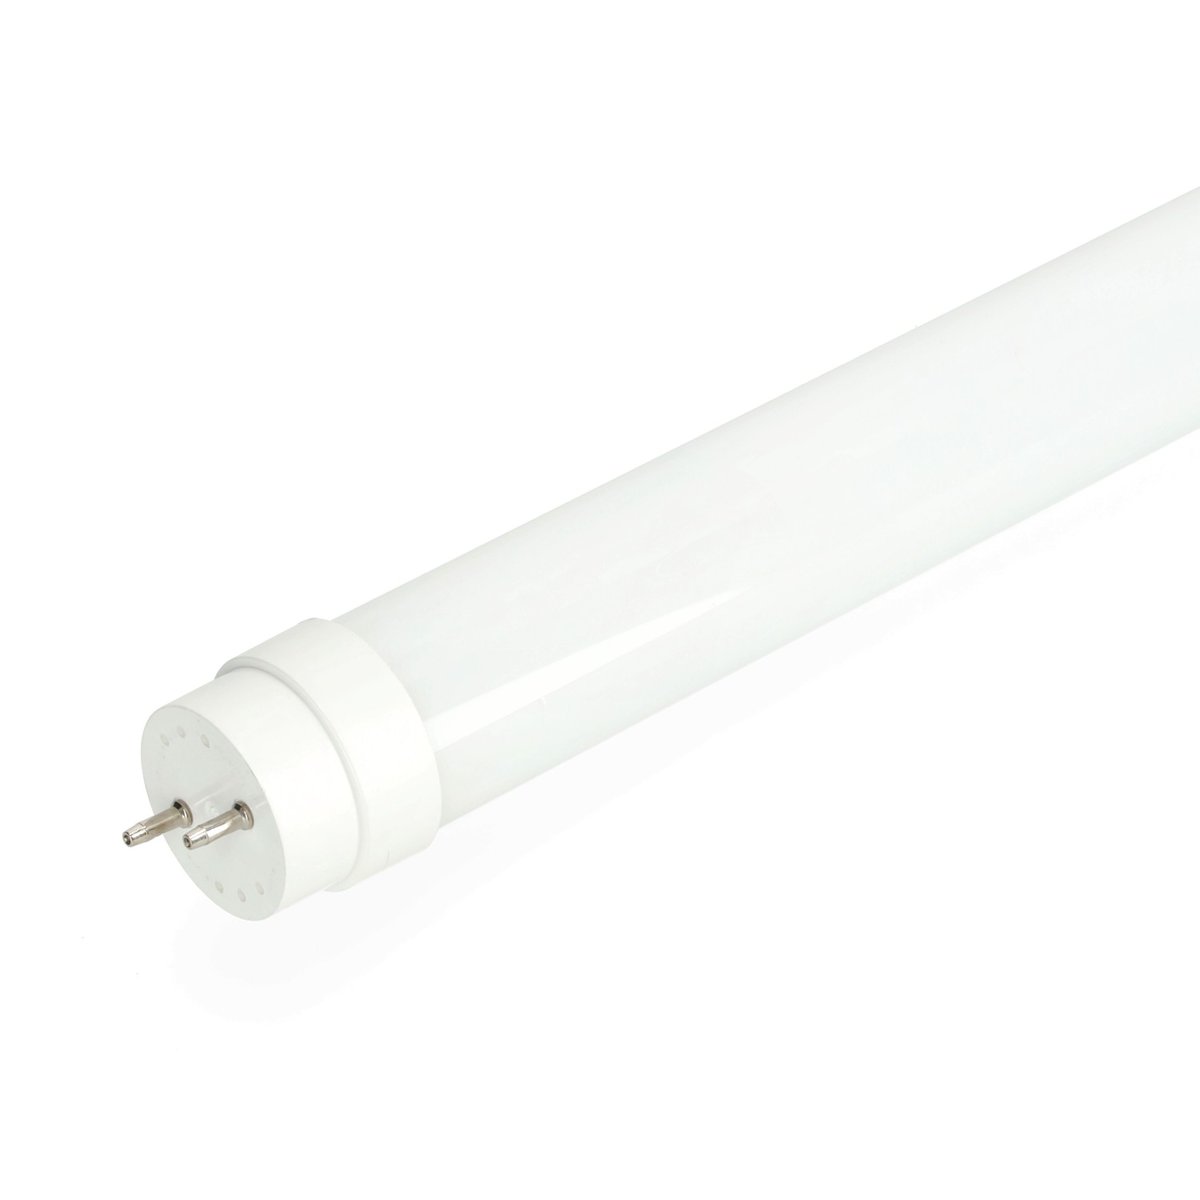 Zdjęcia - Żarówka KOBI Świetlówka LED T8 18W barwa zimnobiała 120cm 